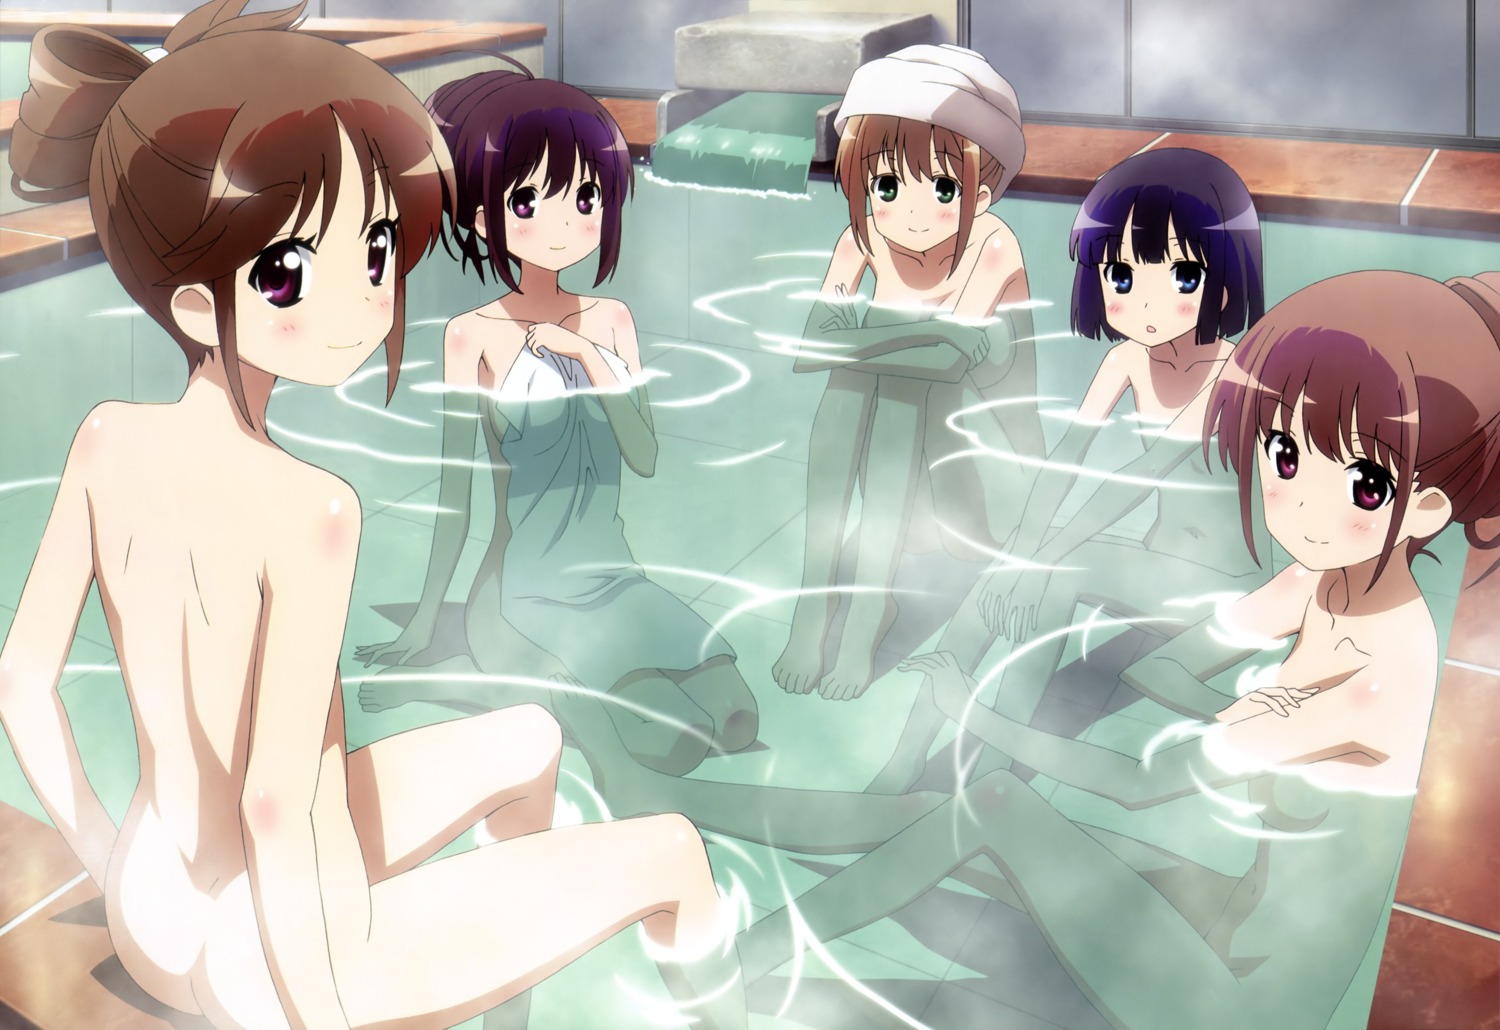 atarashi_ako bathing loli matsumi_kuro matsumi_yuu naked onsen sagimori_arata sakai_takahiro saki saki_achiga-hen takakamo_shizuno towel wet